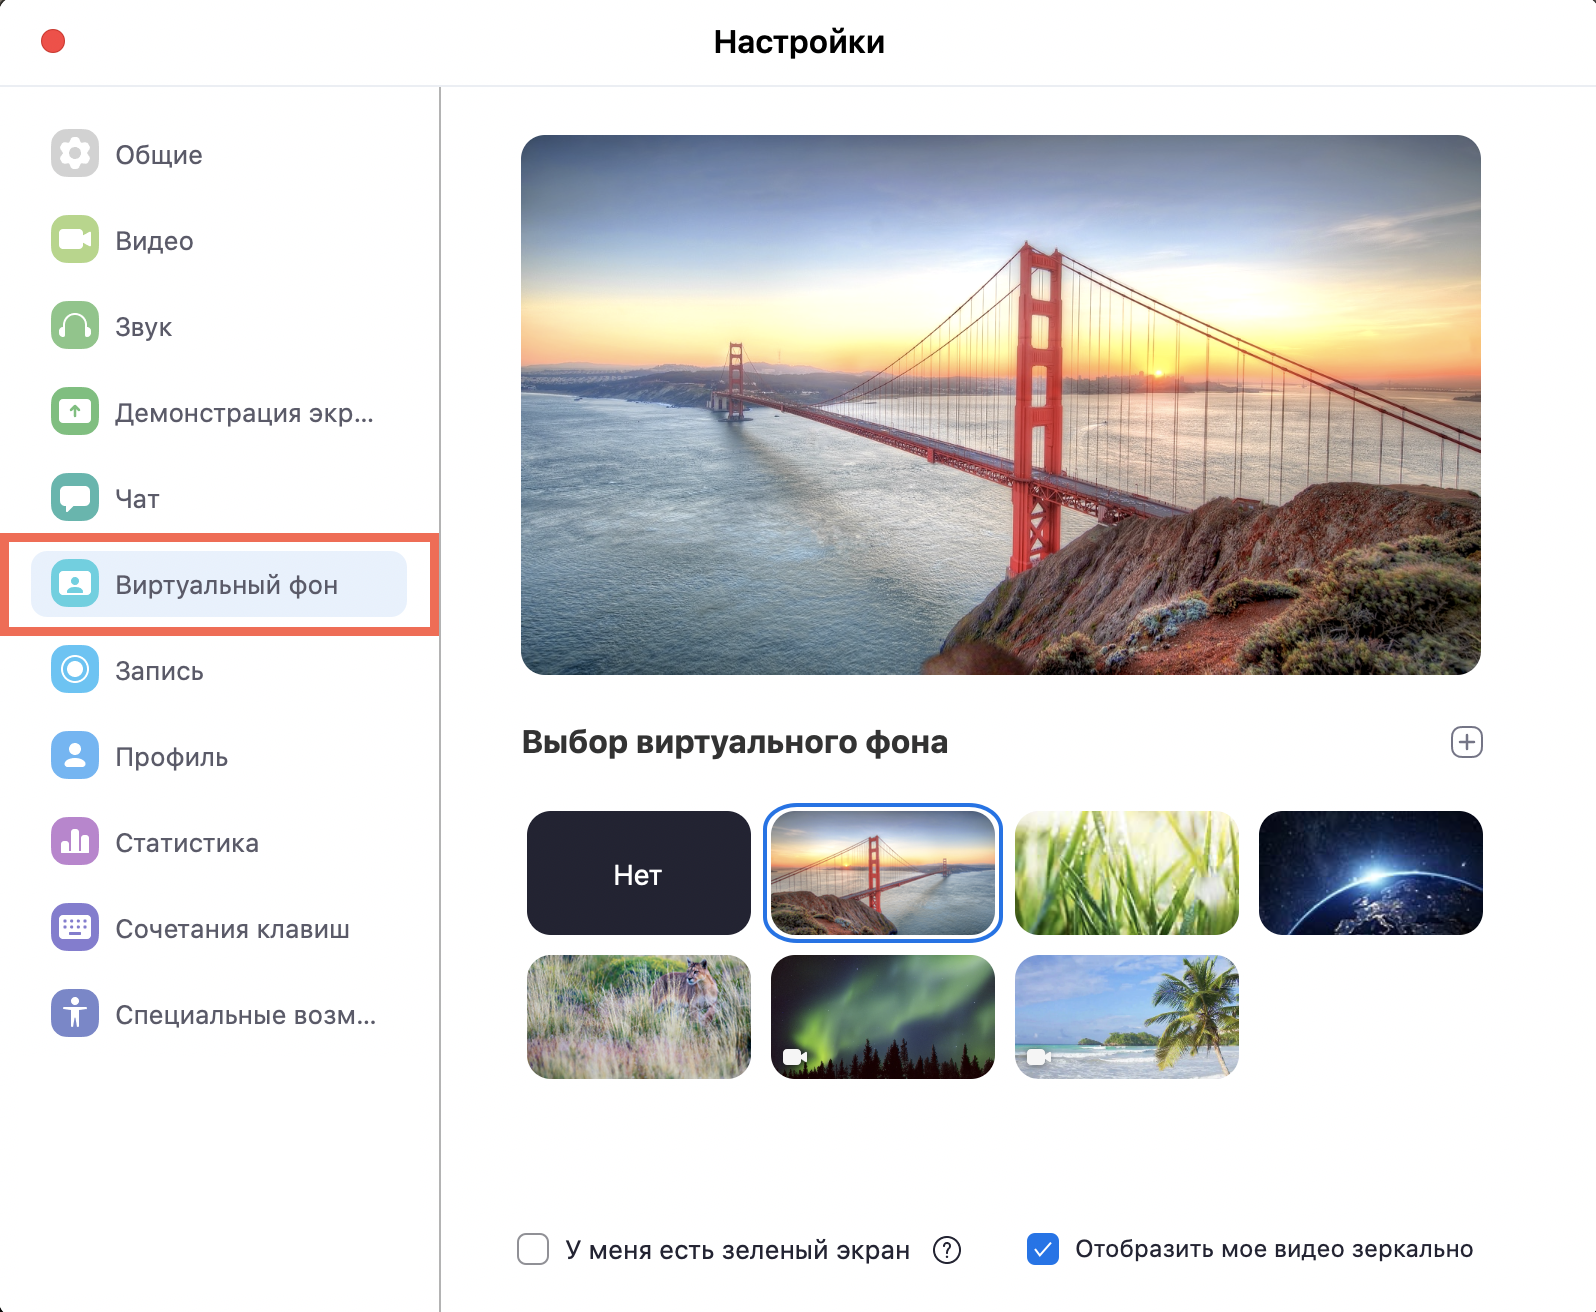 Как сменить фон на фото через телефон андроид бесплатно на русском языке без регистрации